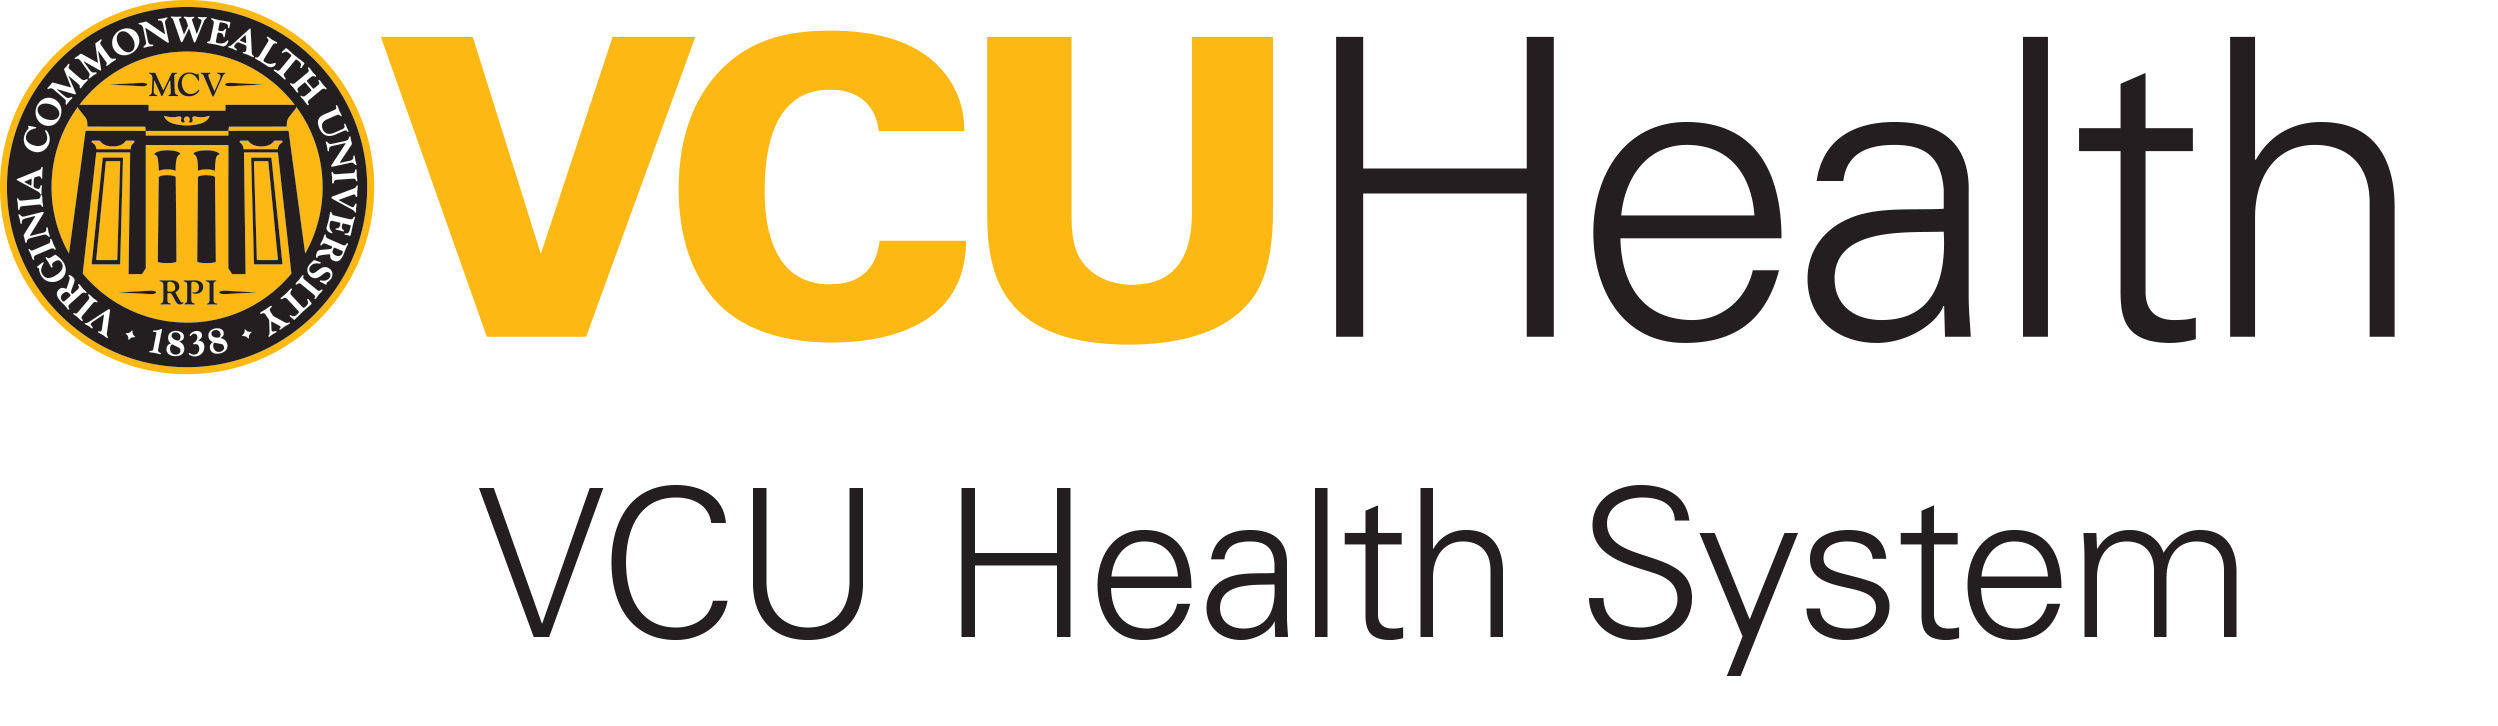 VCU Logo - Career Search | VCU Health